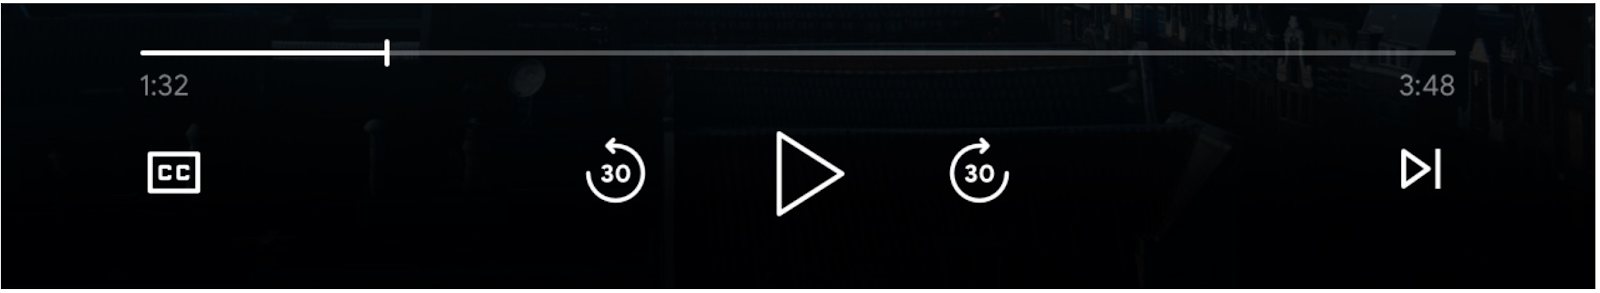 Imagen de los controles del reproductor multimedia: barra de progreso, botón “Reproducir”, botones “Avanzar” y “Saltar hacia atrás”, botones “Fila anterior” y “Cola siguiente” y botones “Subtítulos” habilitados